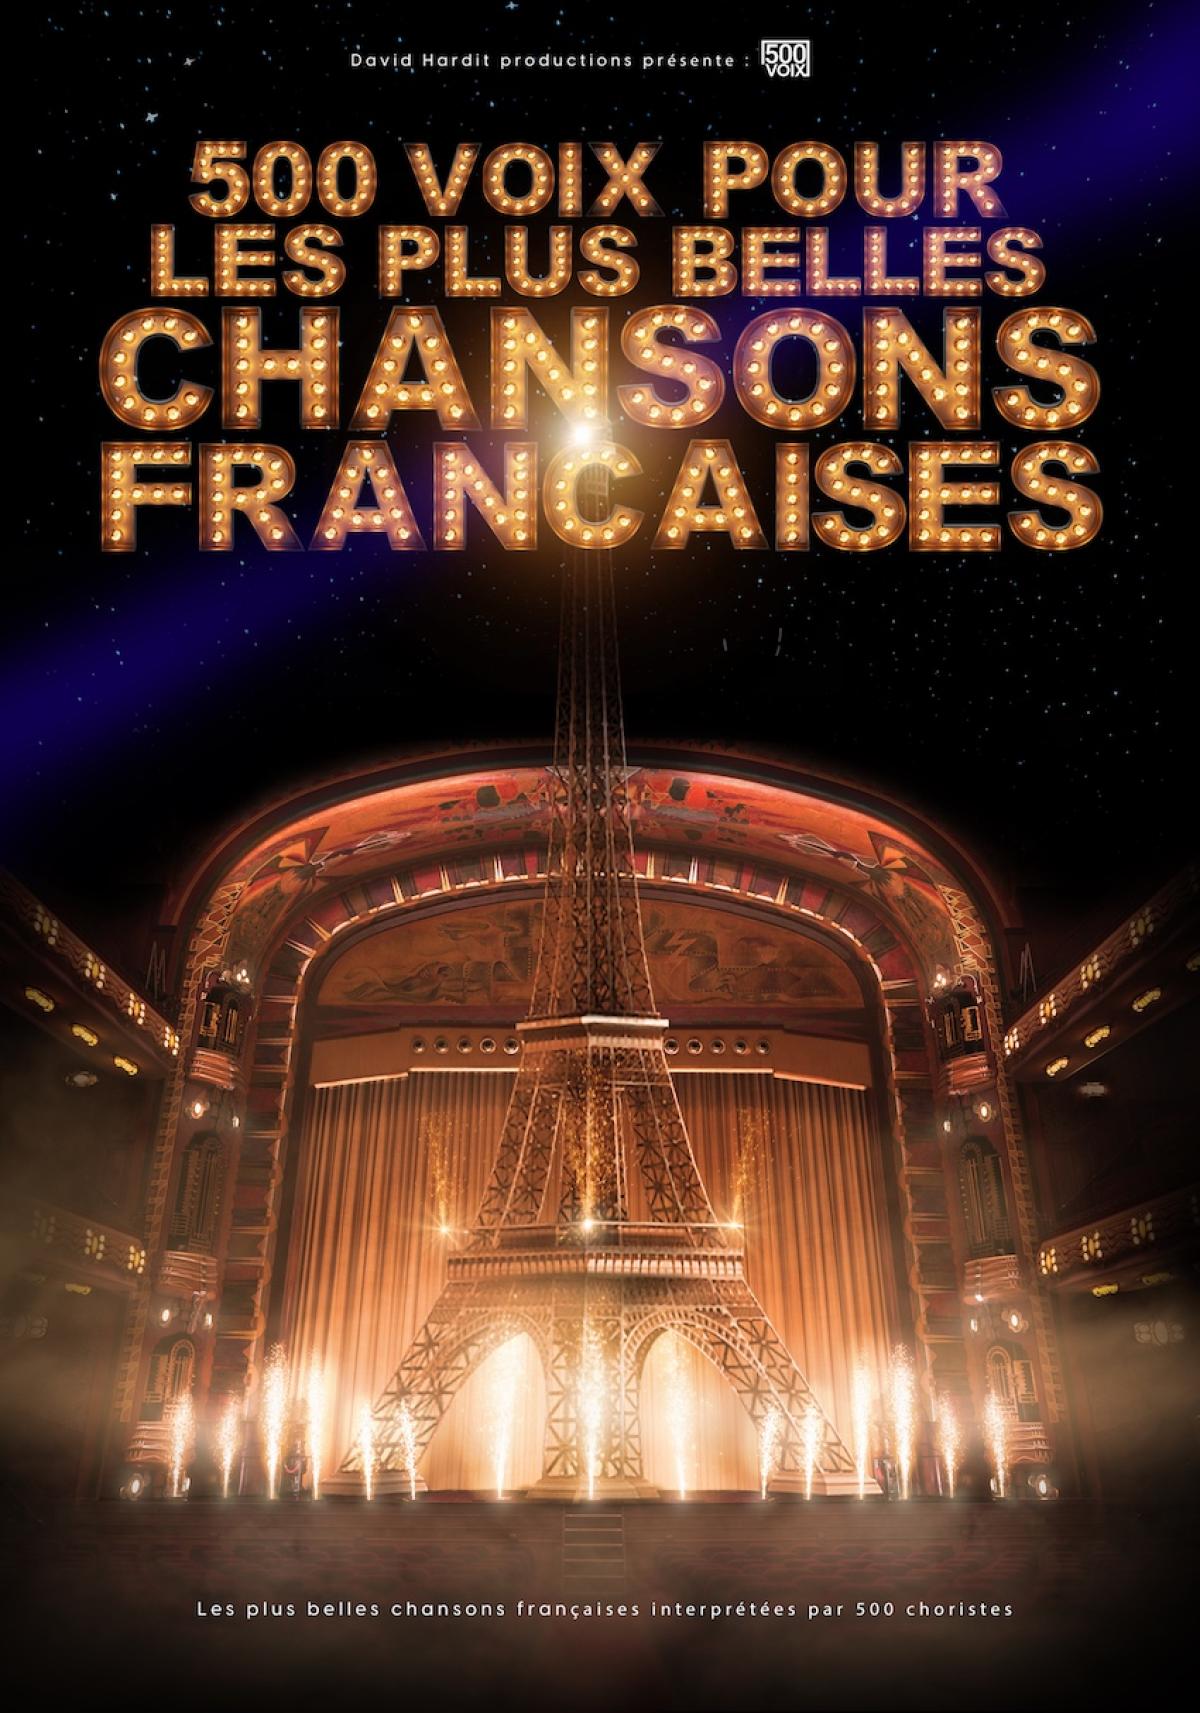 500 Voix Pour Les Plus Belles Chansons en Arena Loire Tickets